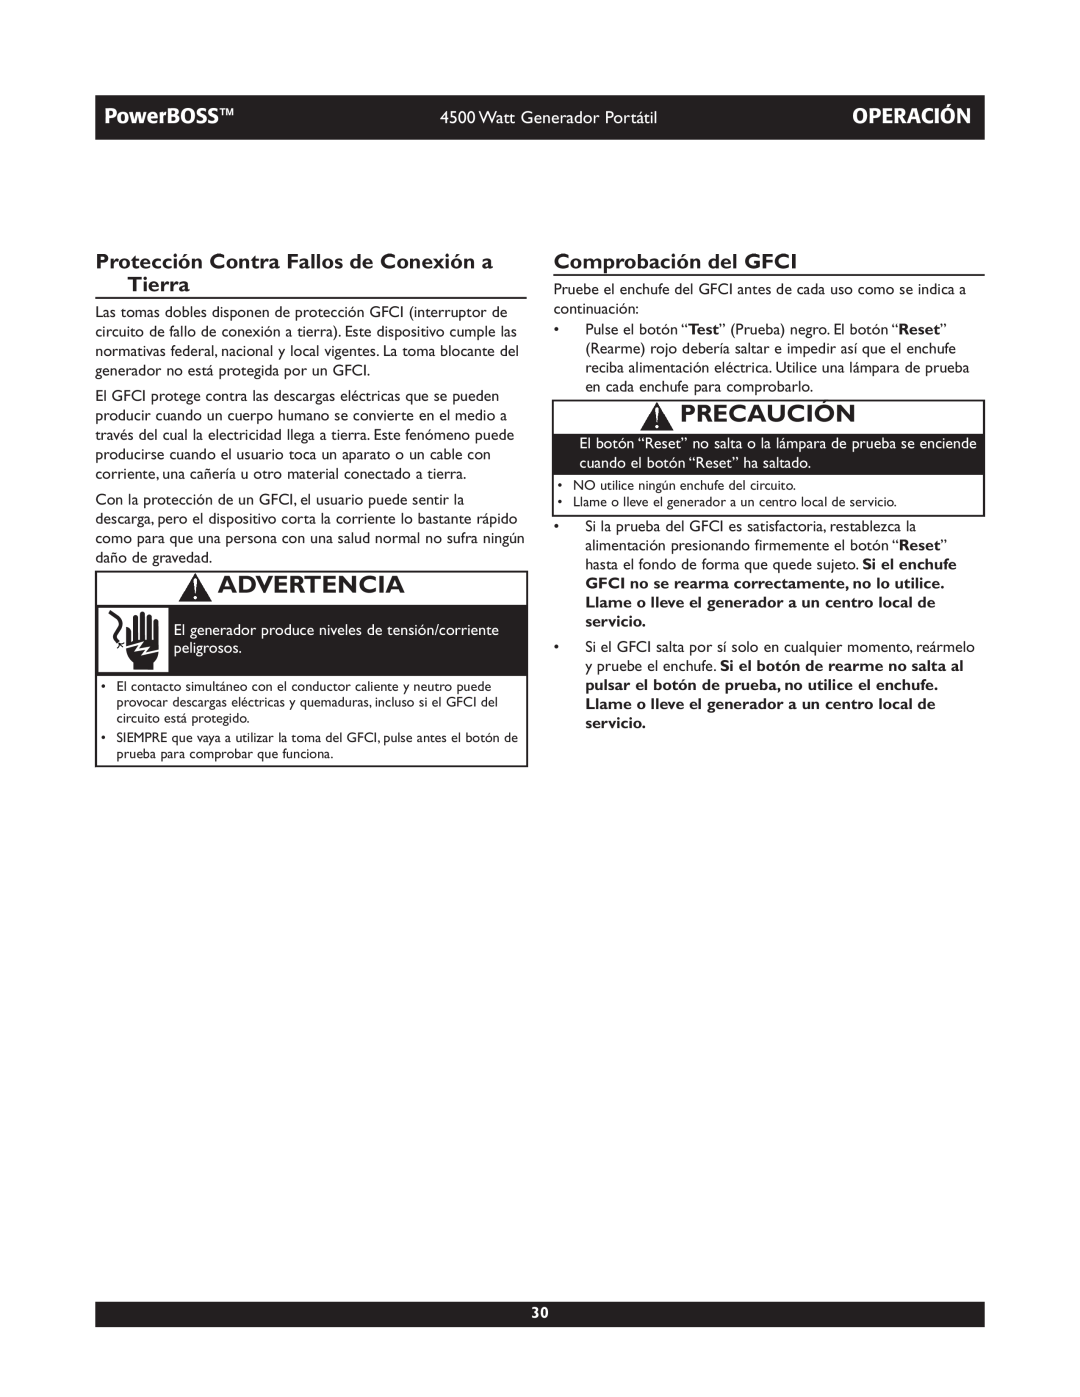 Briggs & Stratton 01648-1 Protección Contra Fallos de Conexión a Tierra, Comprobación del GFCI, Advertencia, Precaución 